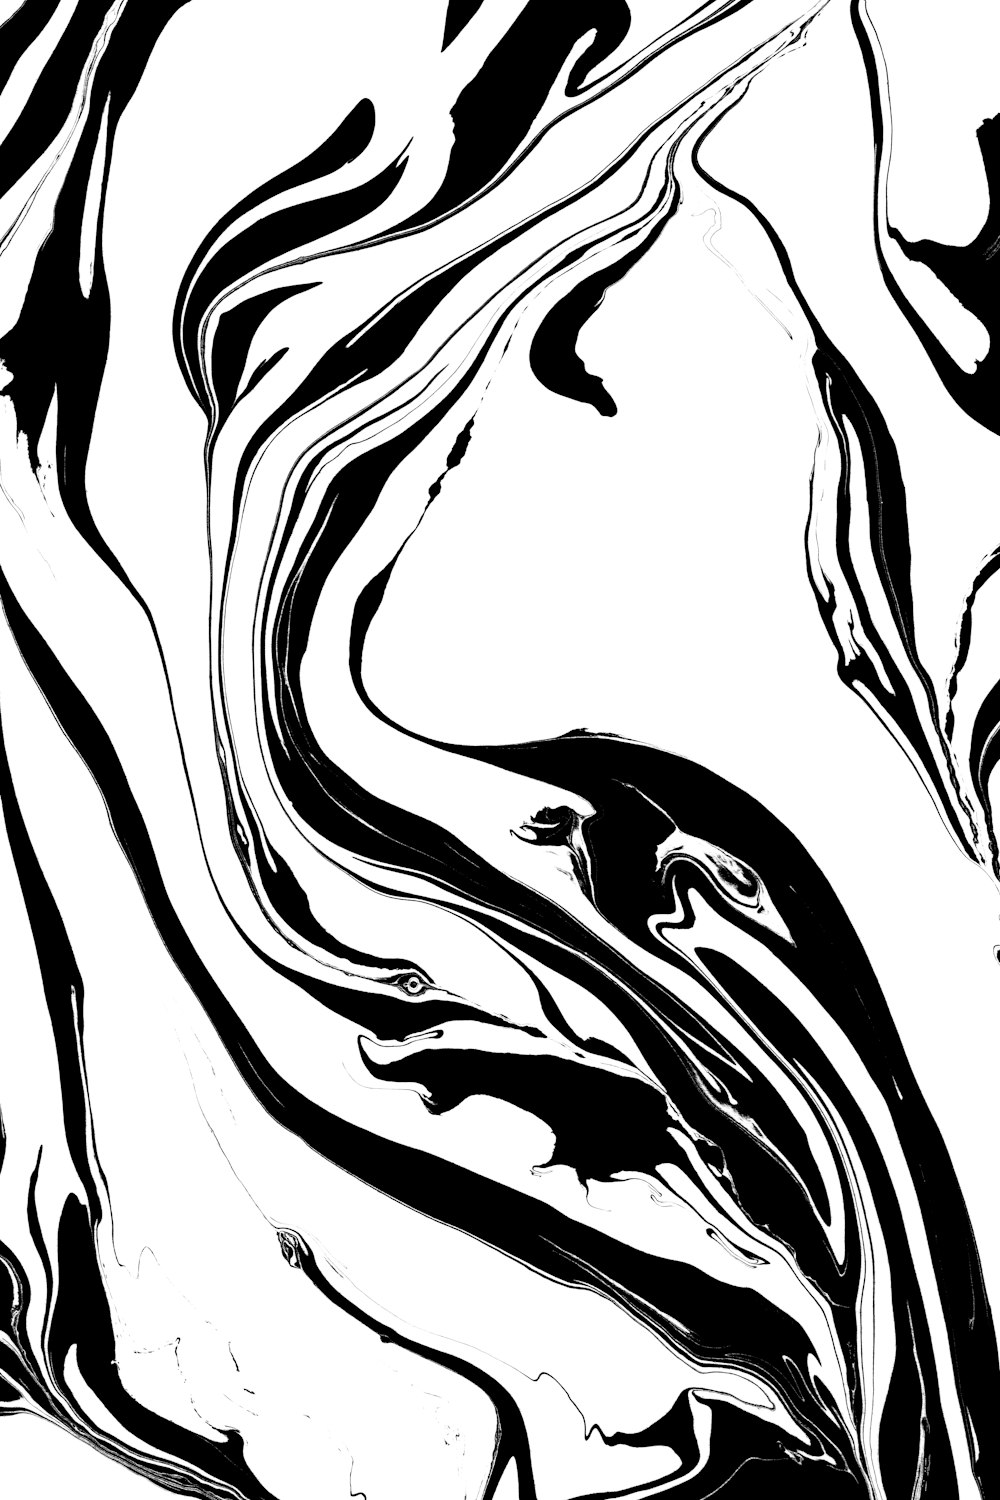 Une image en noir et blanc d’un tourbillon